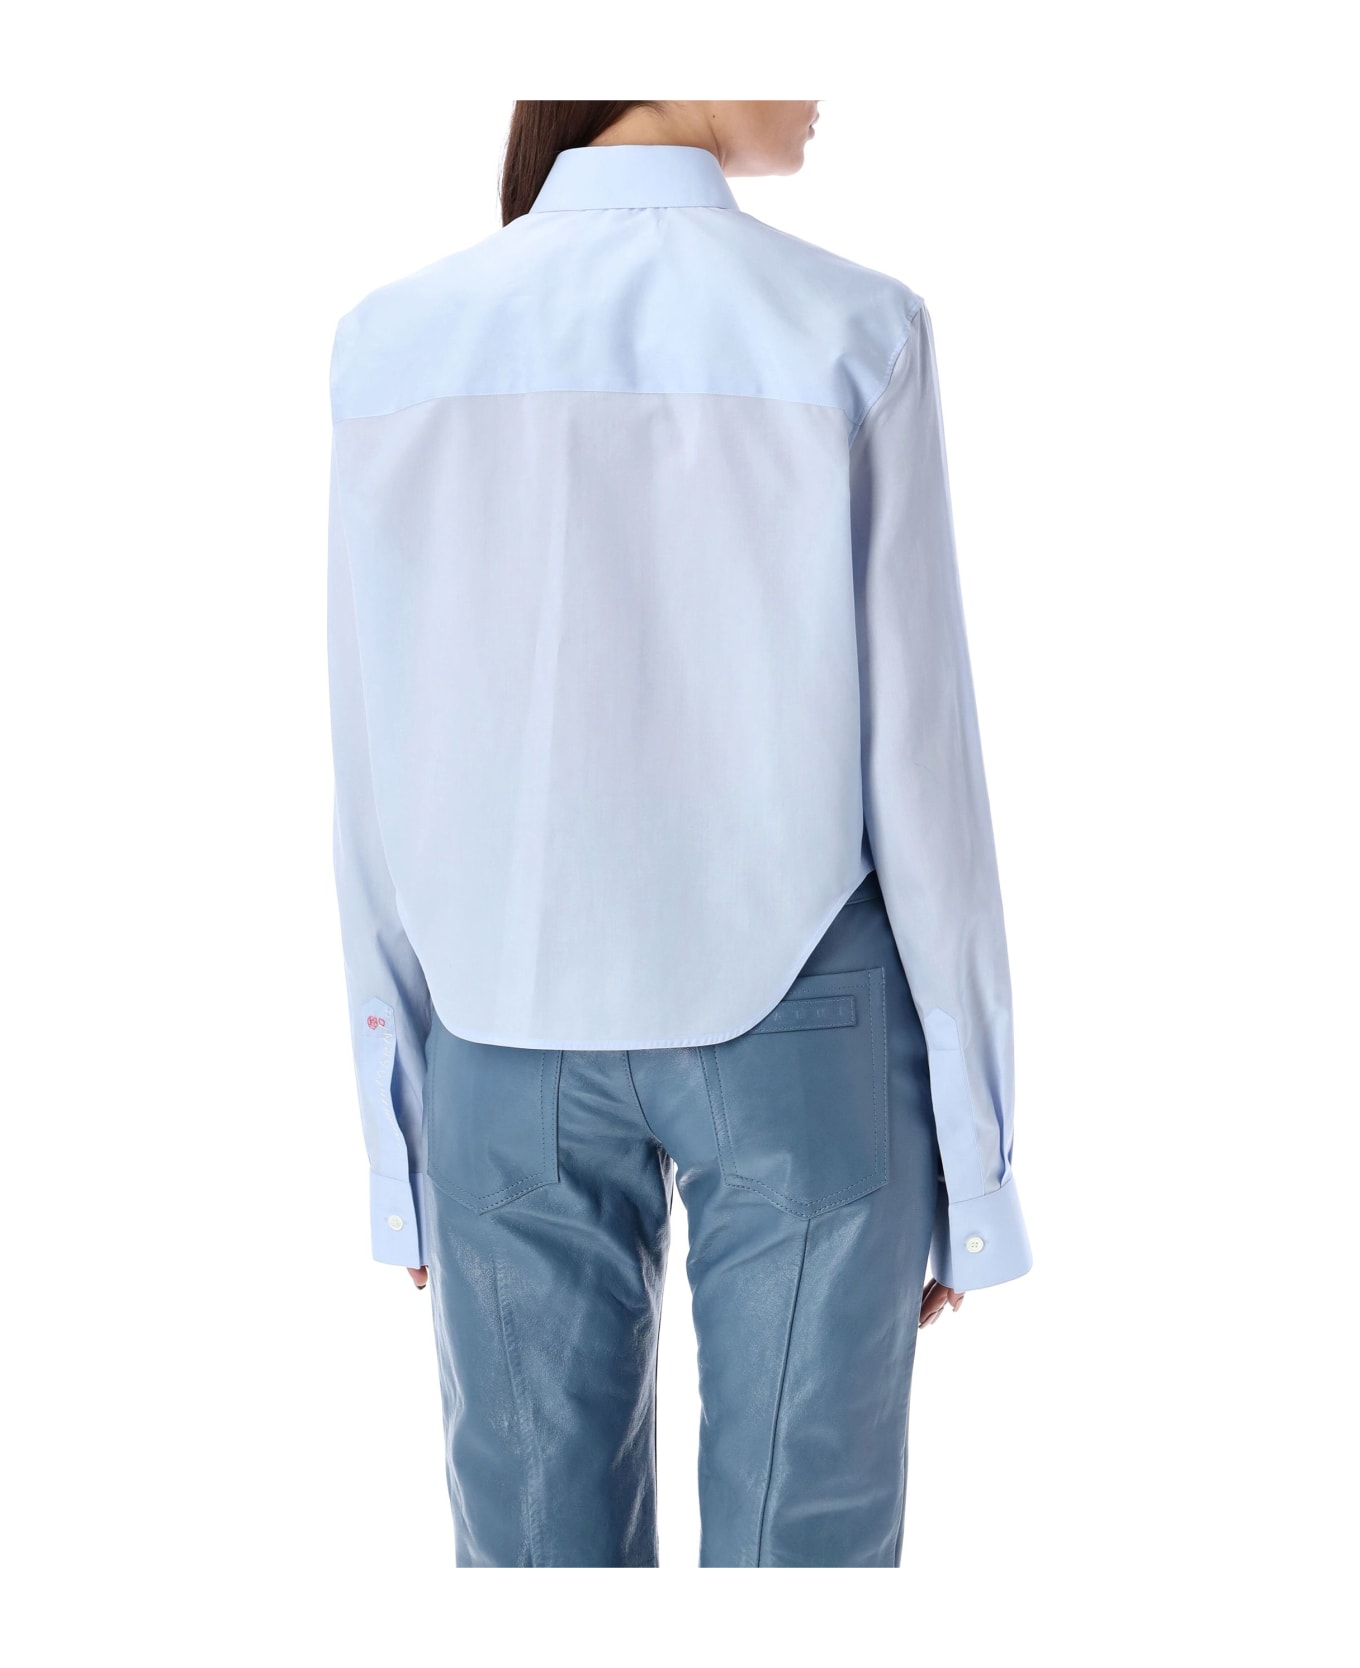 Marni Cropped Shirt - LIGHT BLUE